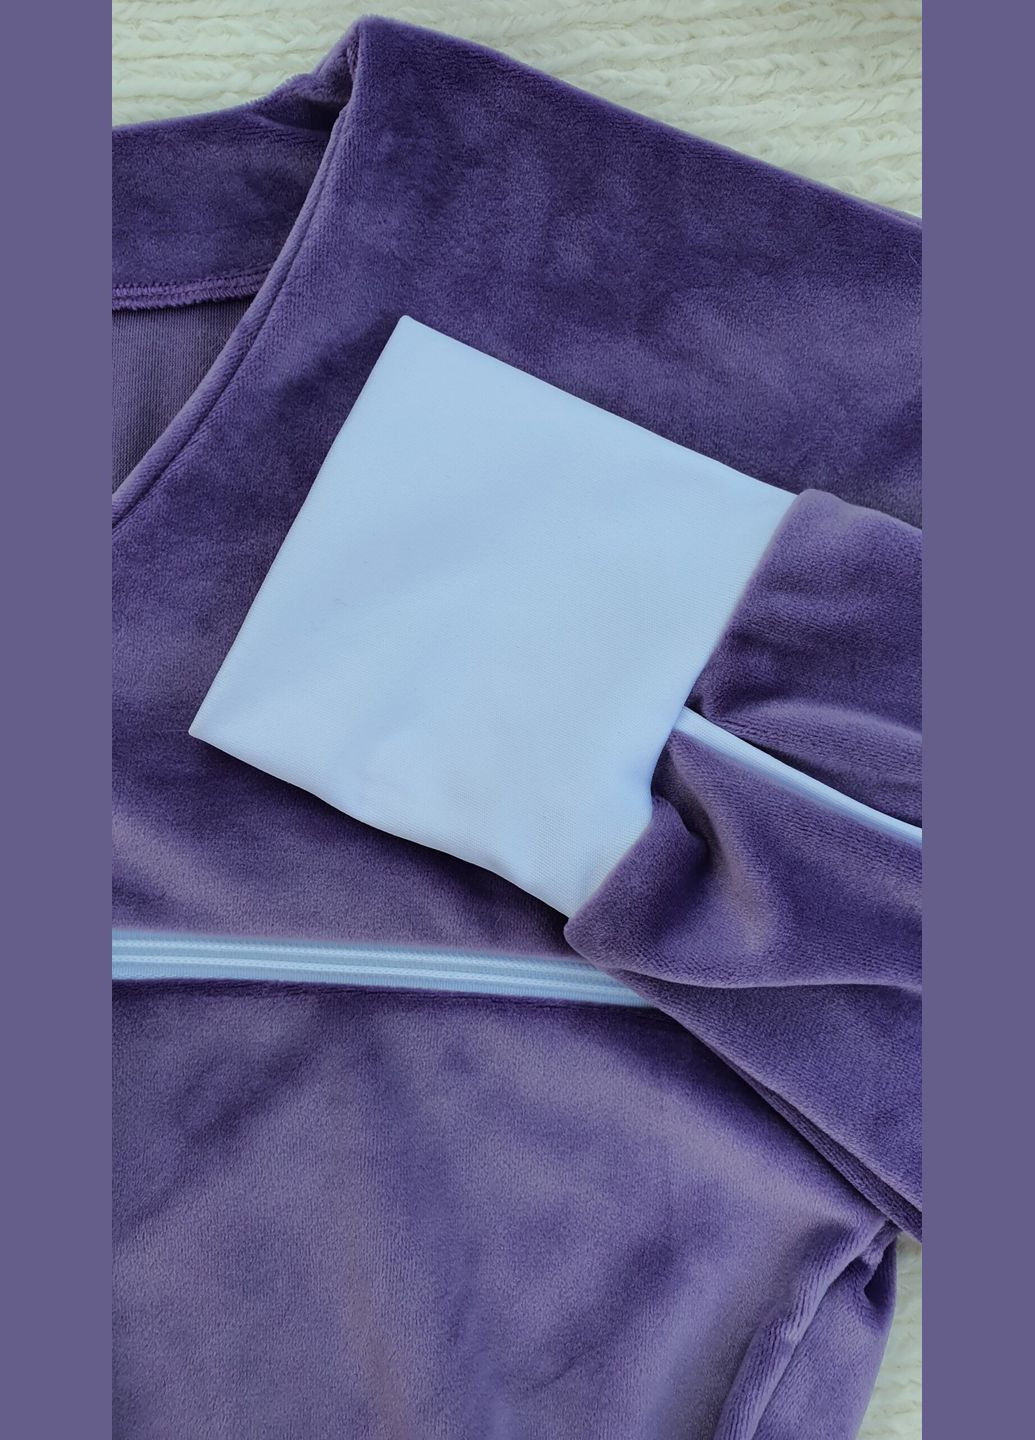 Комбинезон велюровый фиолетовый L JUGO fashion tayt комбинезон-брюки однотонный фиолетовый домашний